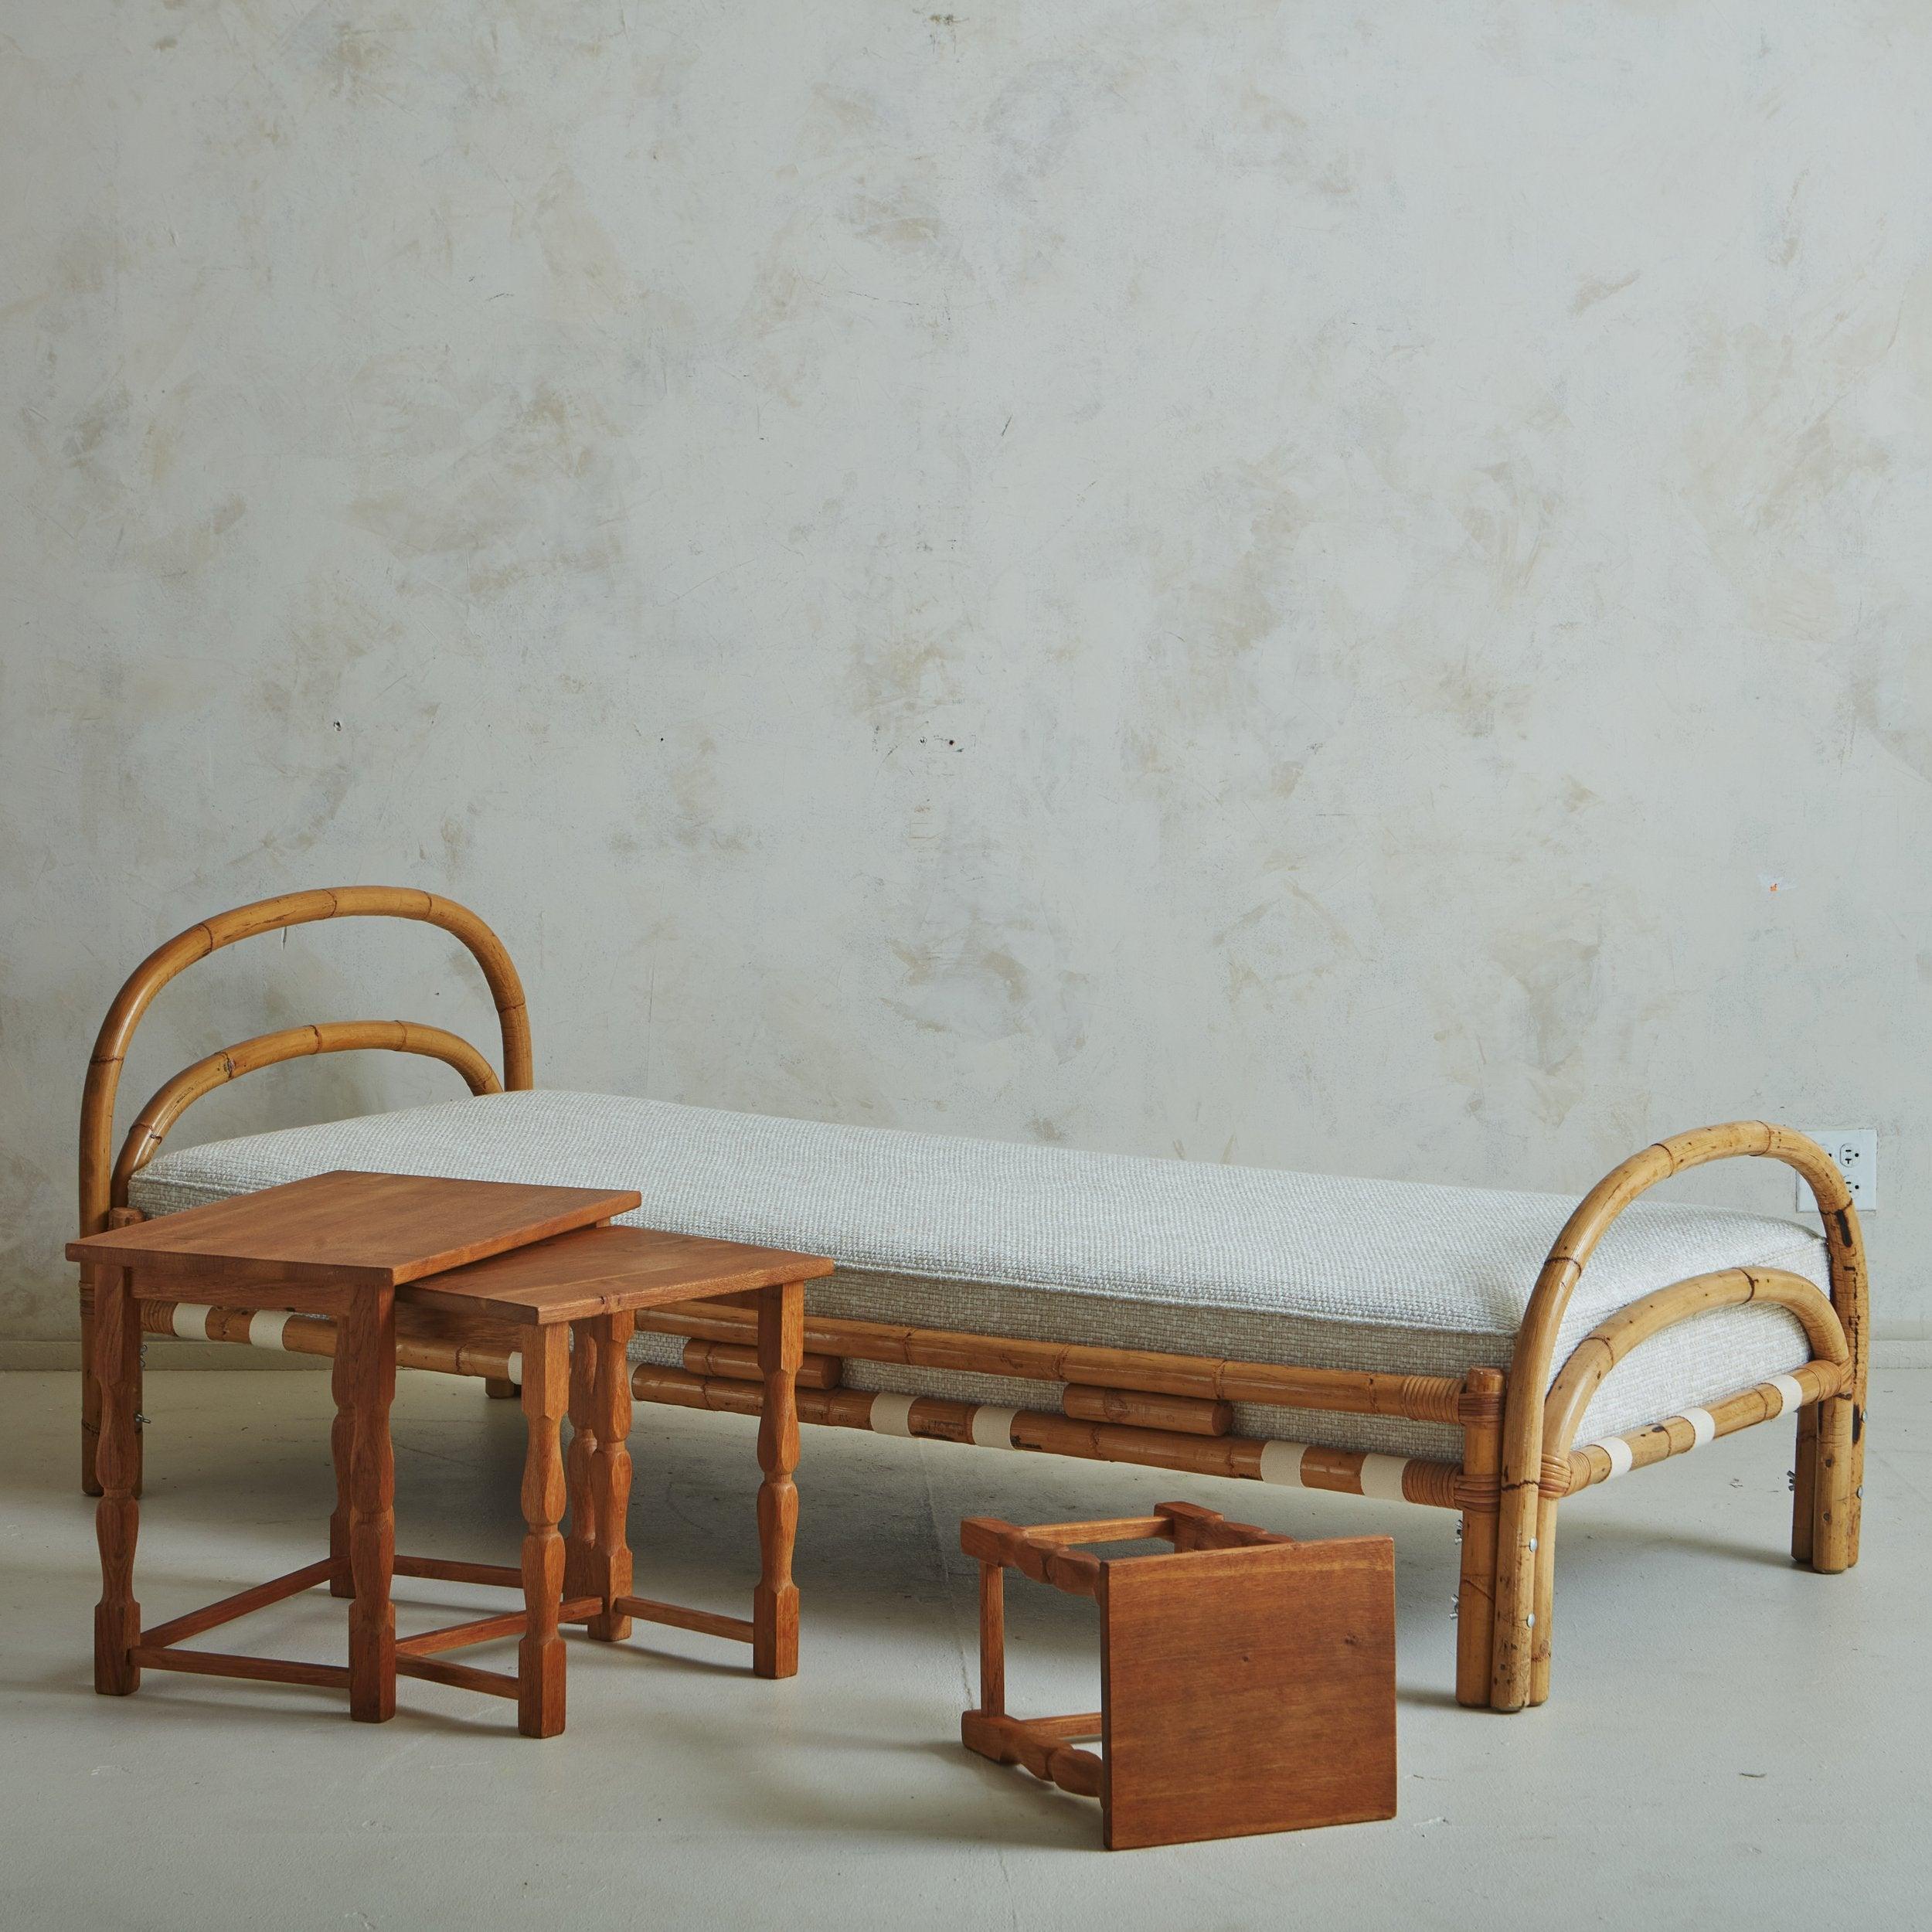 Un lit de jour italien intemporel du milieu du siècle avec un cadre incurvé en bambou et en canne. Ce meuble dispose d'un coussin de matelas qui a été fraîchement retapissé dans un beau tissu bouclé tissé gris avec des détails de passepoil simple.